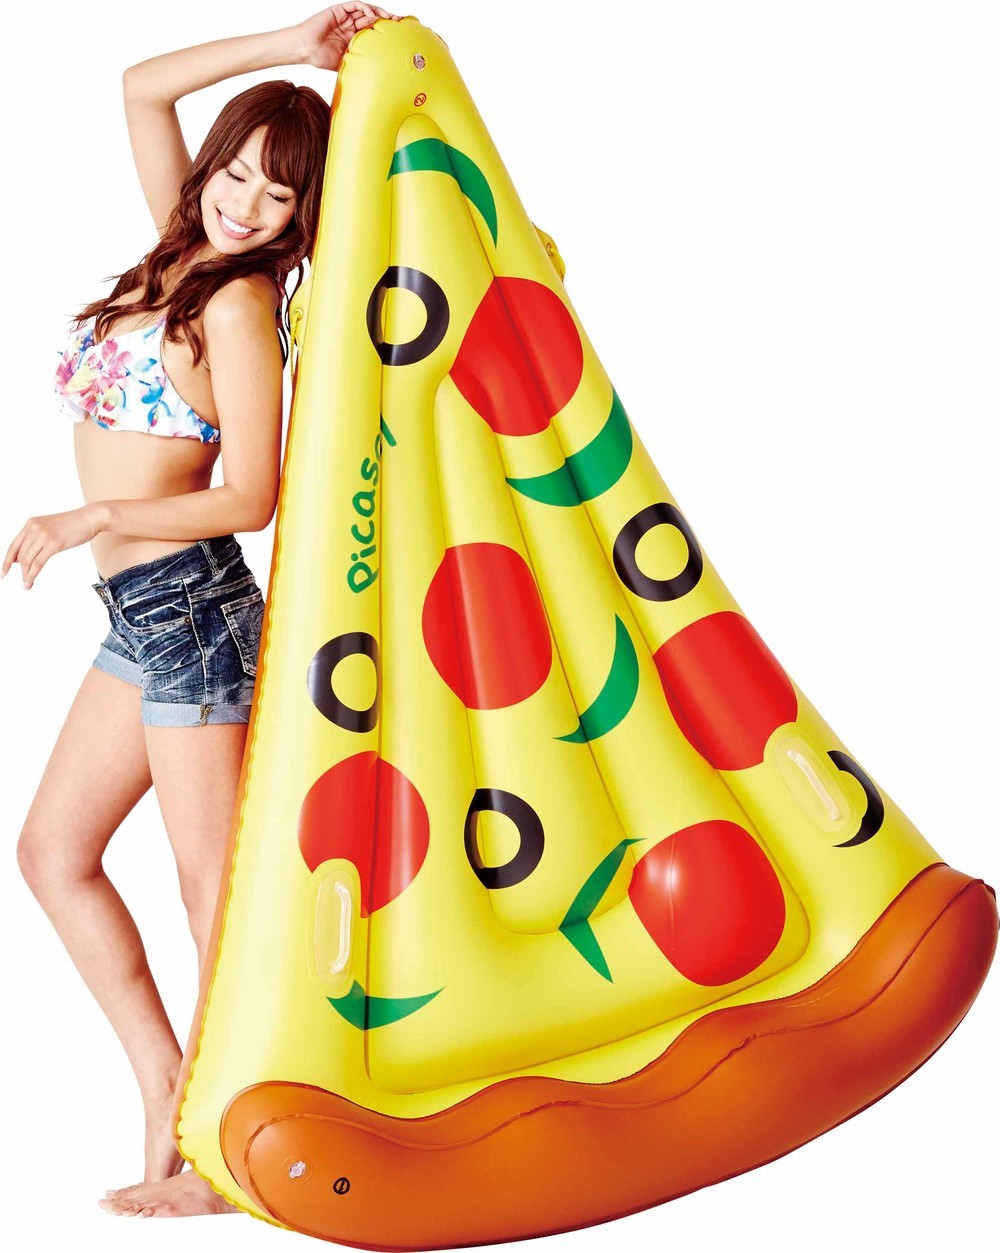 これは「いいね」しちゃう！　ピザ、パイナップルの「浮き輪」が爆誕